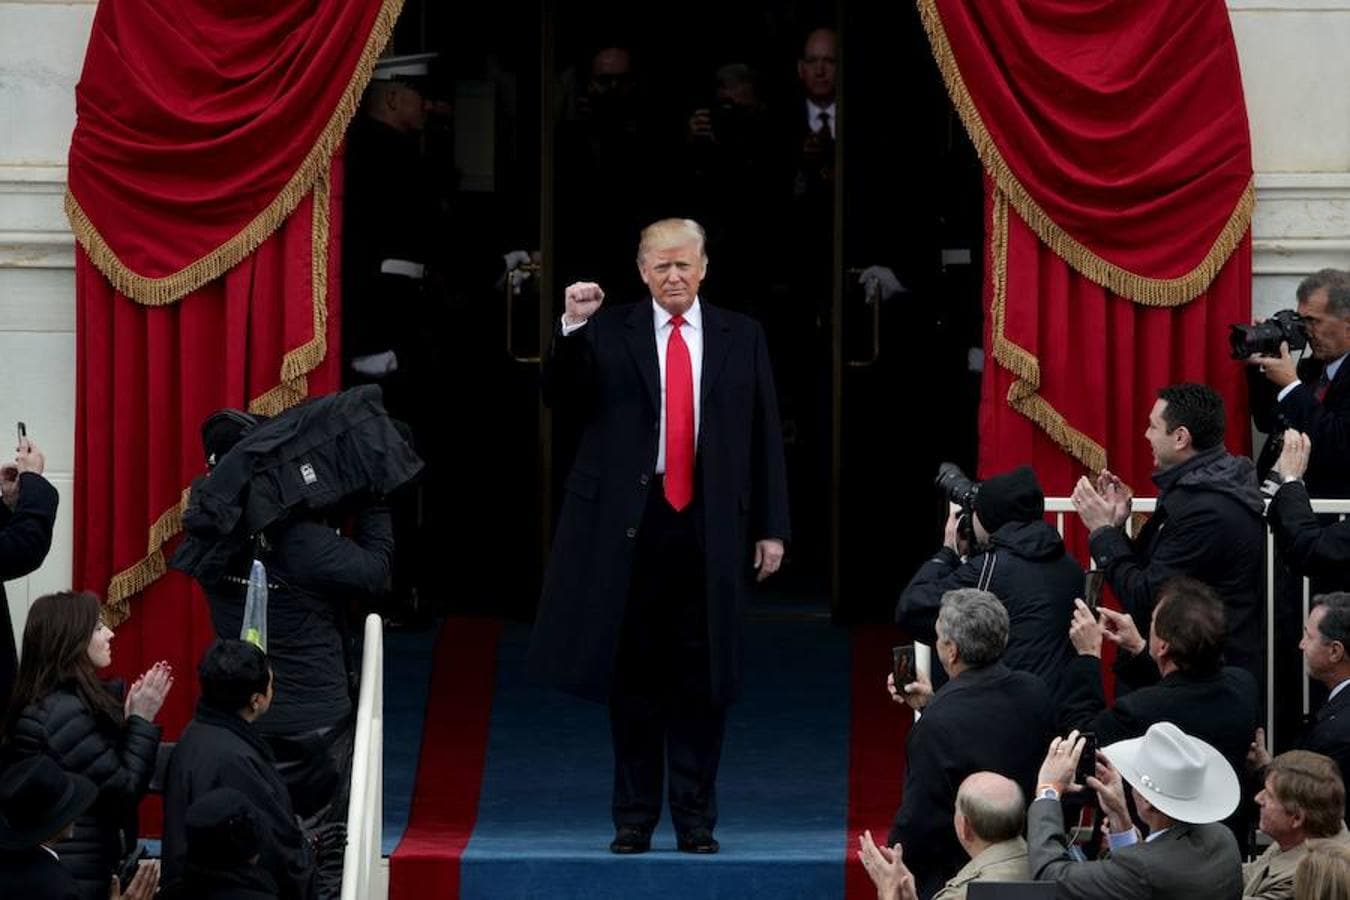 Trump levanta el puño al inicio de la ceremonia de investidura